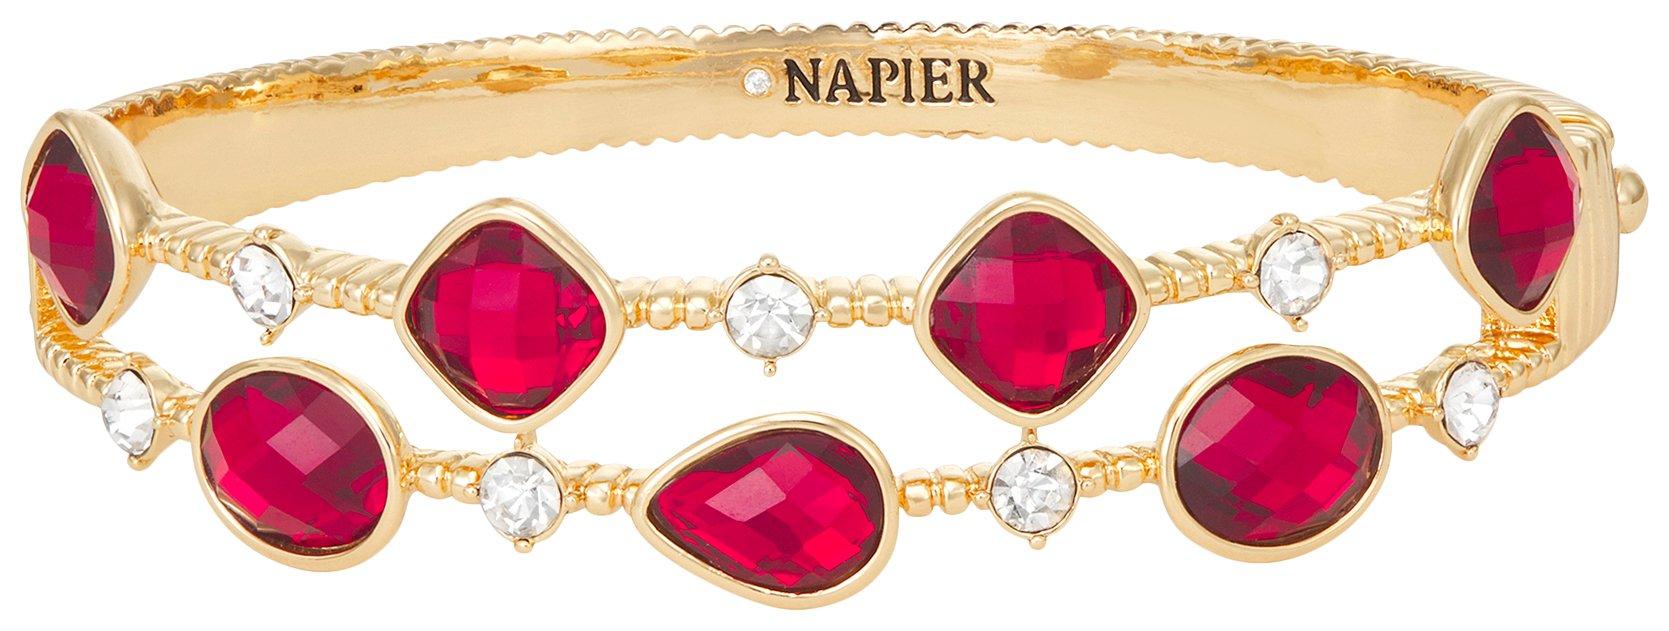 Napier 2.5 In. Rhinestone Hinged Bangle Bracelet